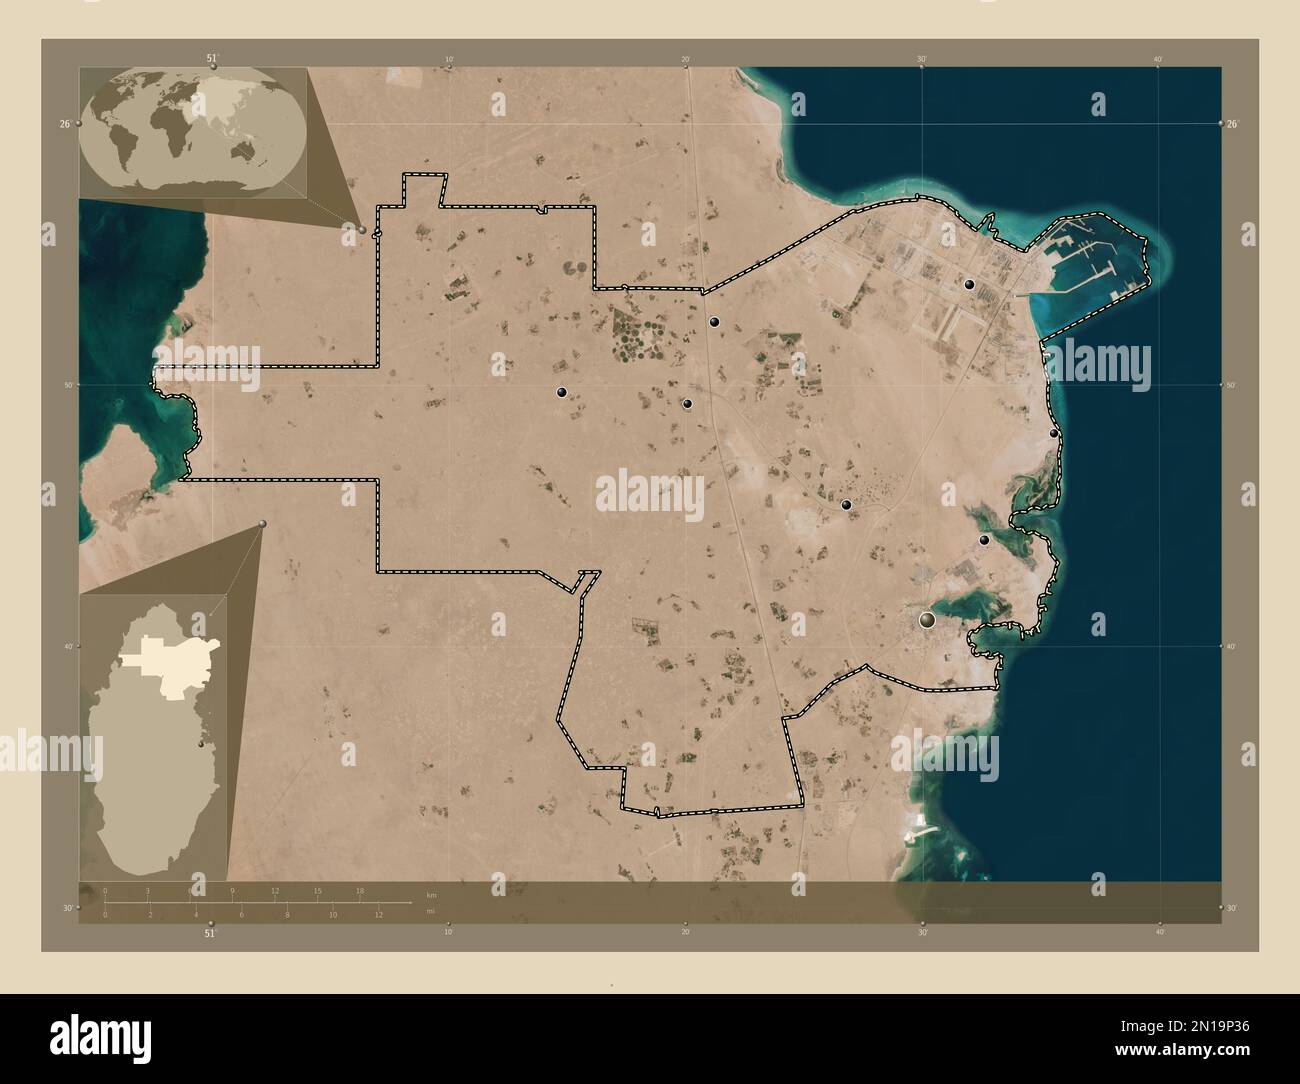 Al Khor, comune del Qatar. Mappa satellitare ad alta risoluzione. Posizioni delle principali città della regione. Mappe delle posizioni ausiliarie degli angoli Foto Stock